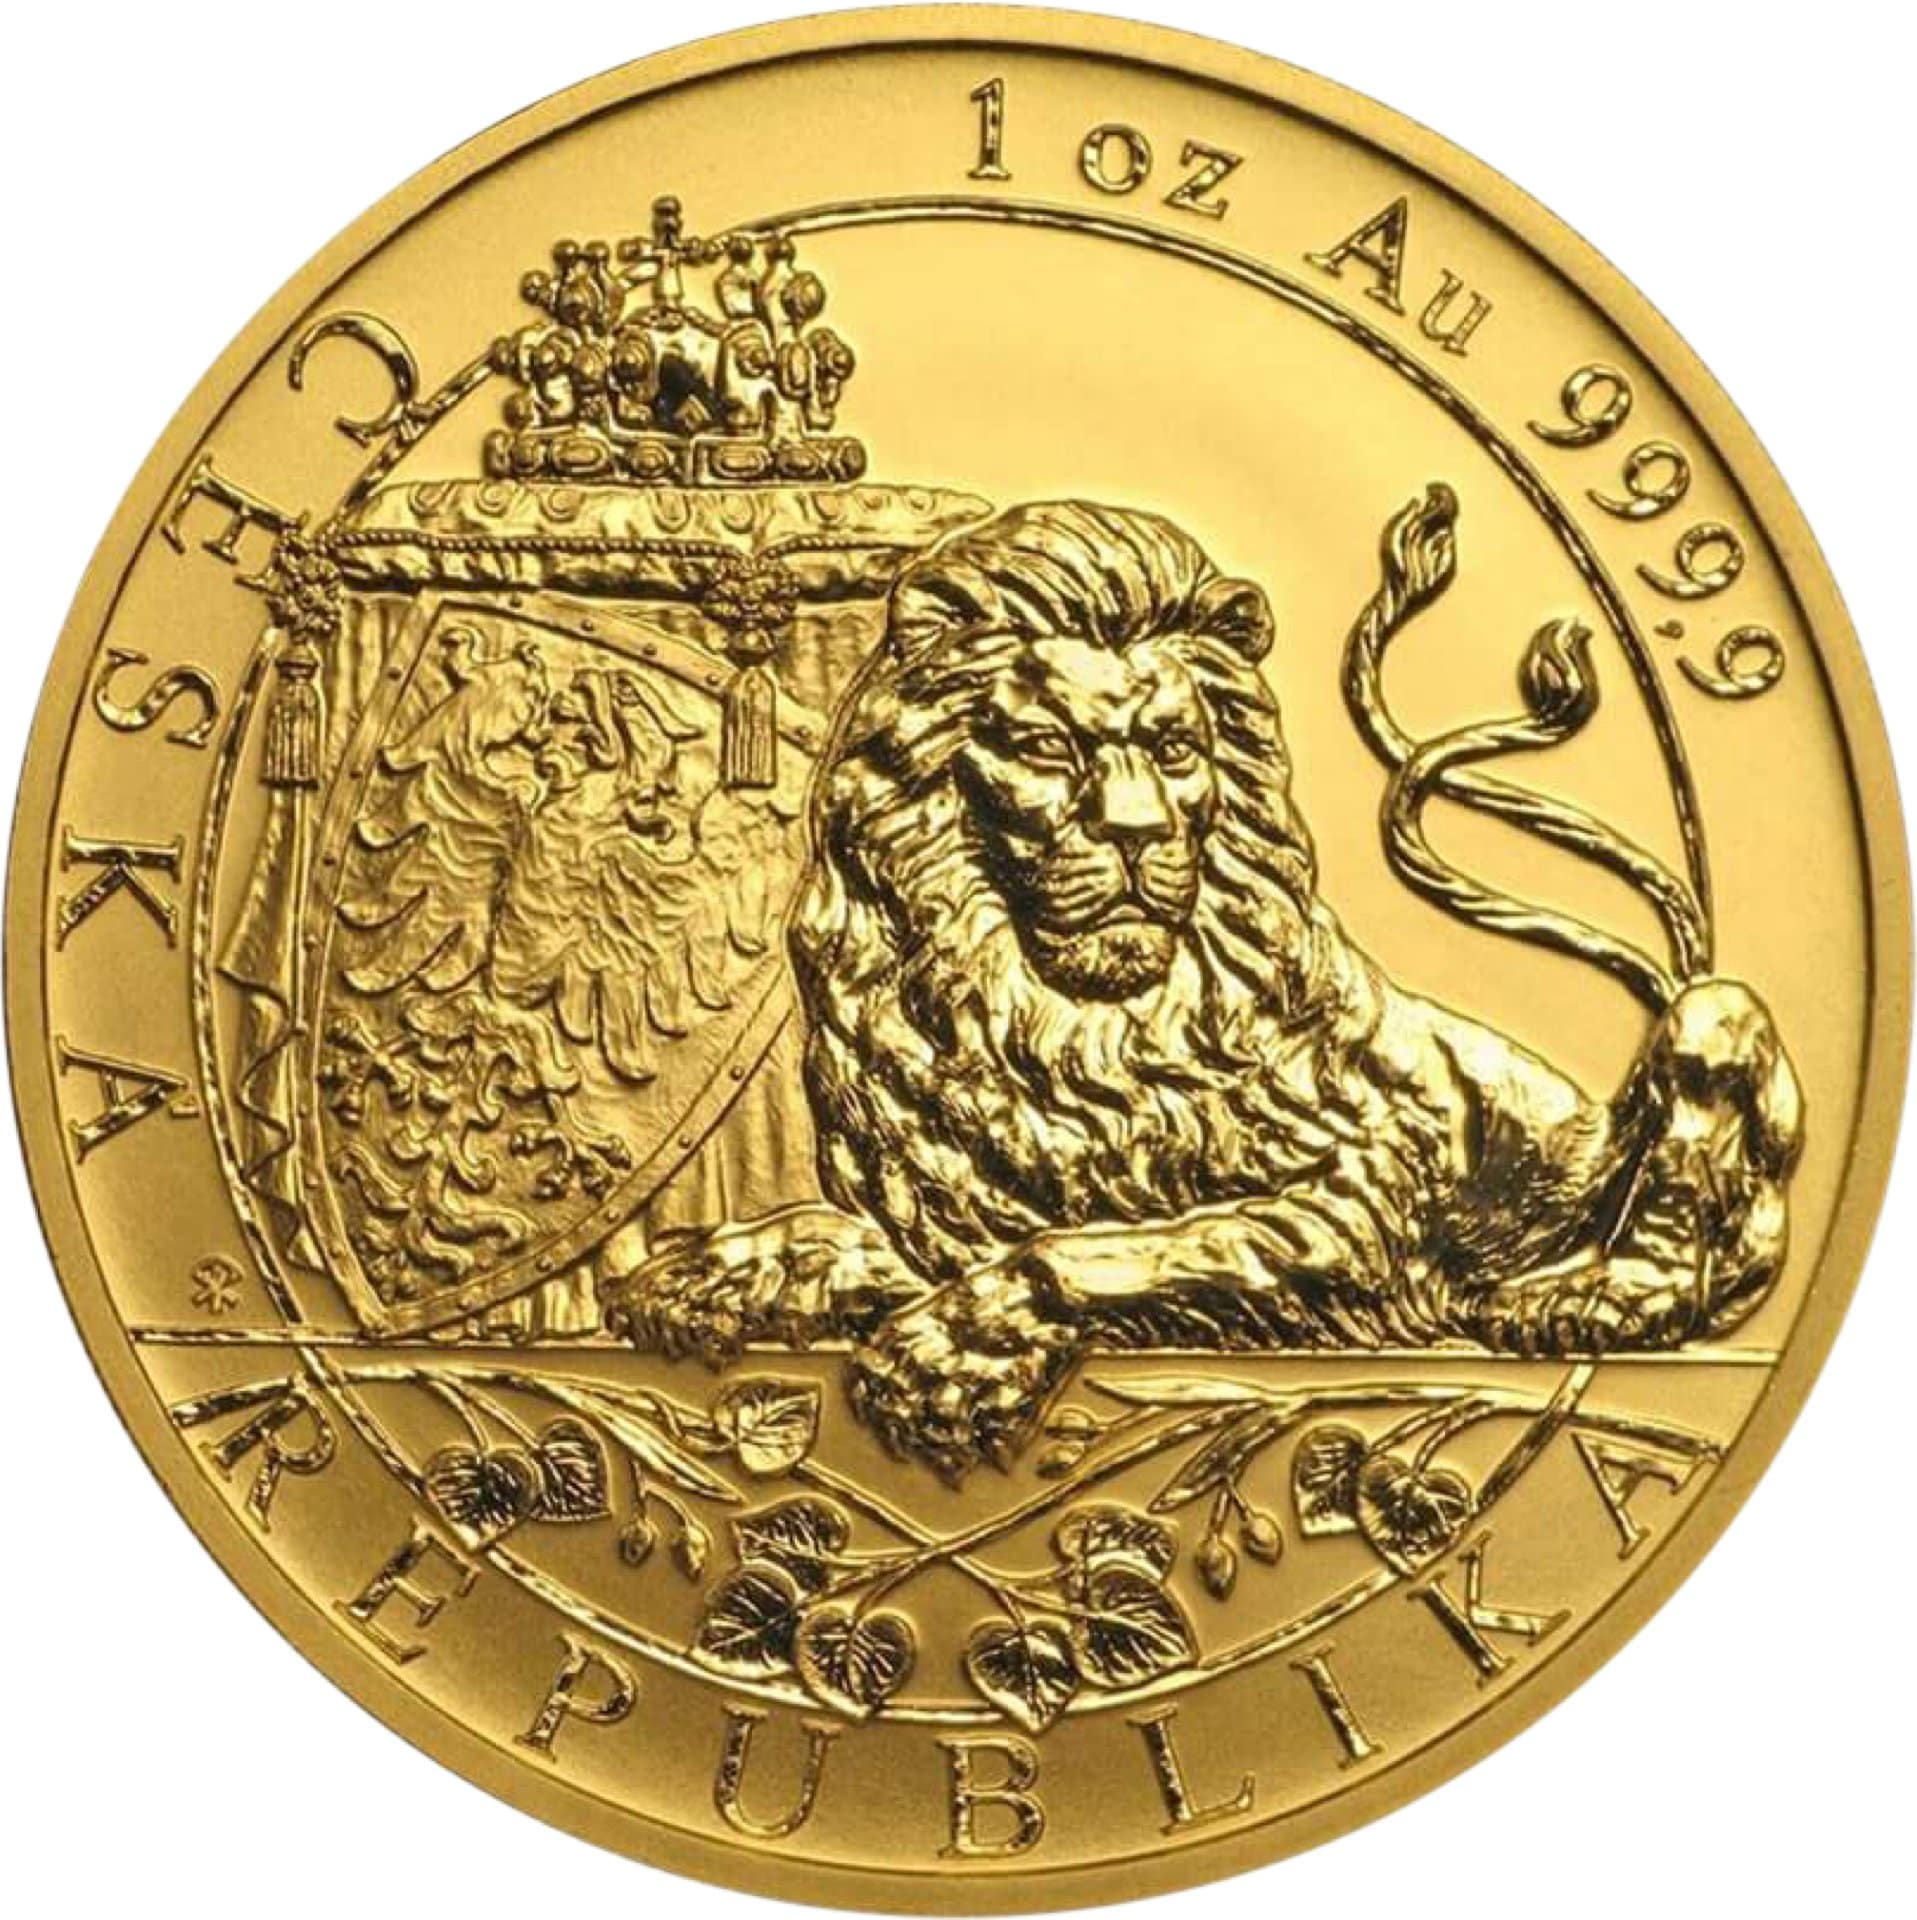 1 Unze Gold Tschechischer Löwe 2018 Reverse Proof (Auflage: 600)